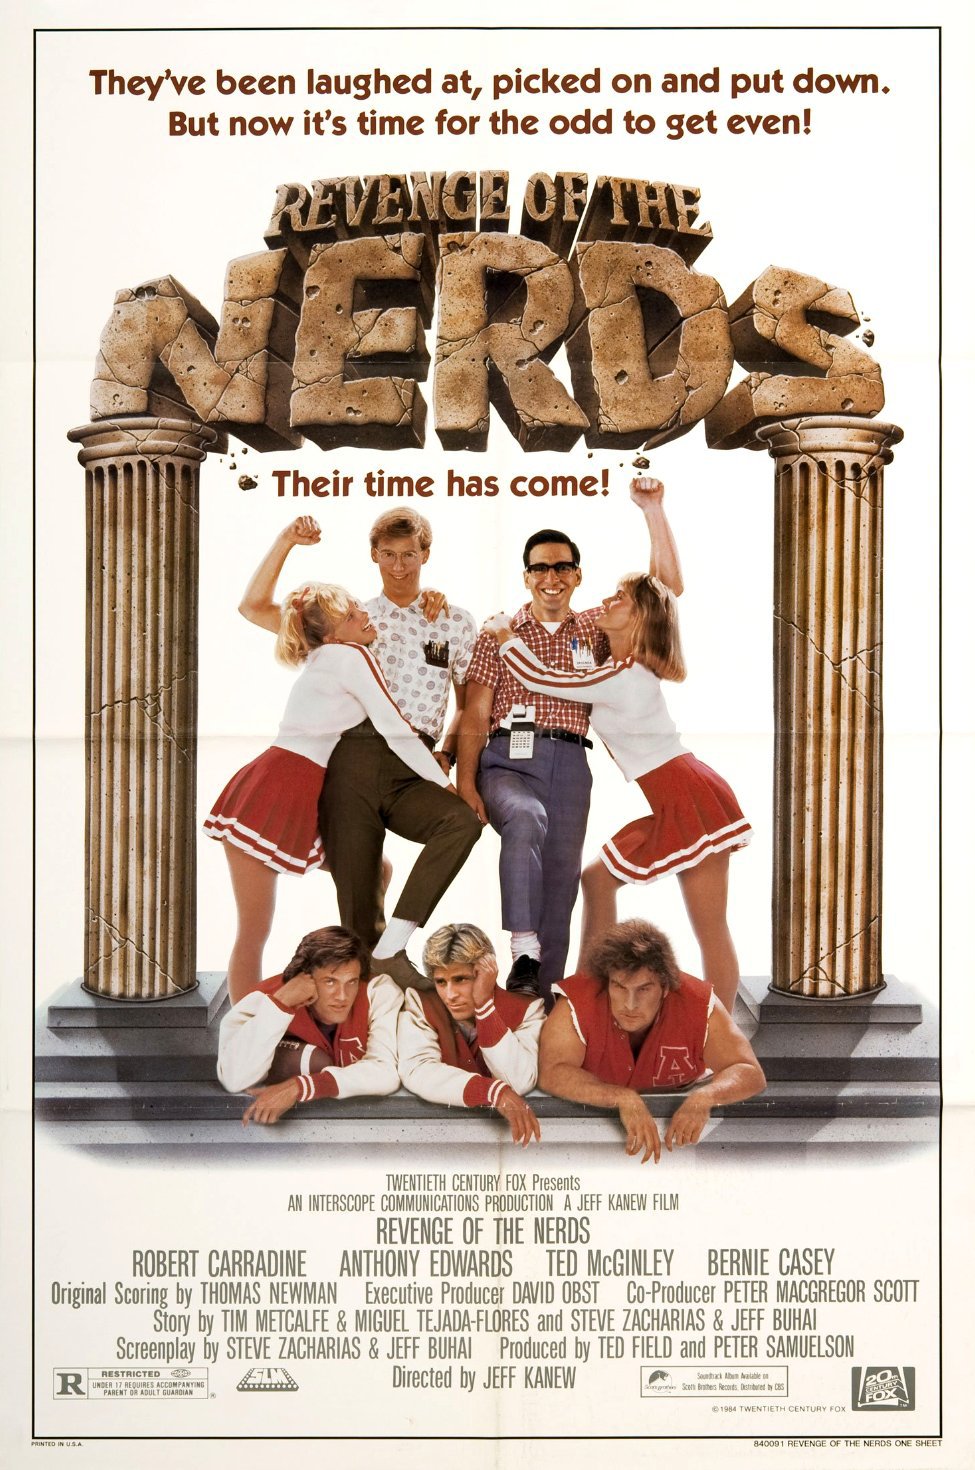 ดูหนังออนไลน์ฟรี Revenge of the Nerds (1984) เวอร์แวน ออฟ เดอะ เนิร์ด หนังเต็มเรื่อง หนังมาสเตอร์ ดูหนังHD ดูหนังออนไลน์ ดูหนังใหม่